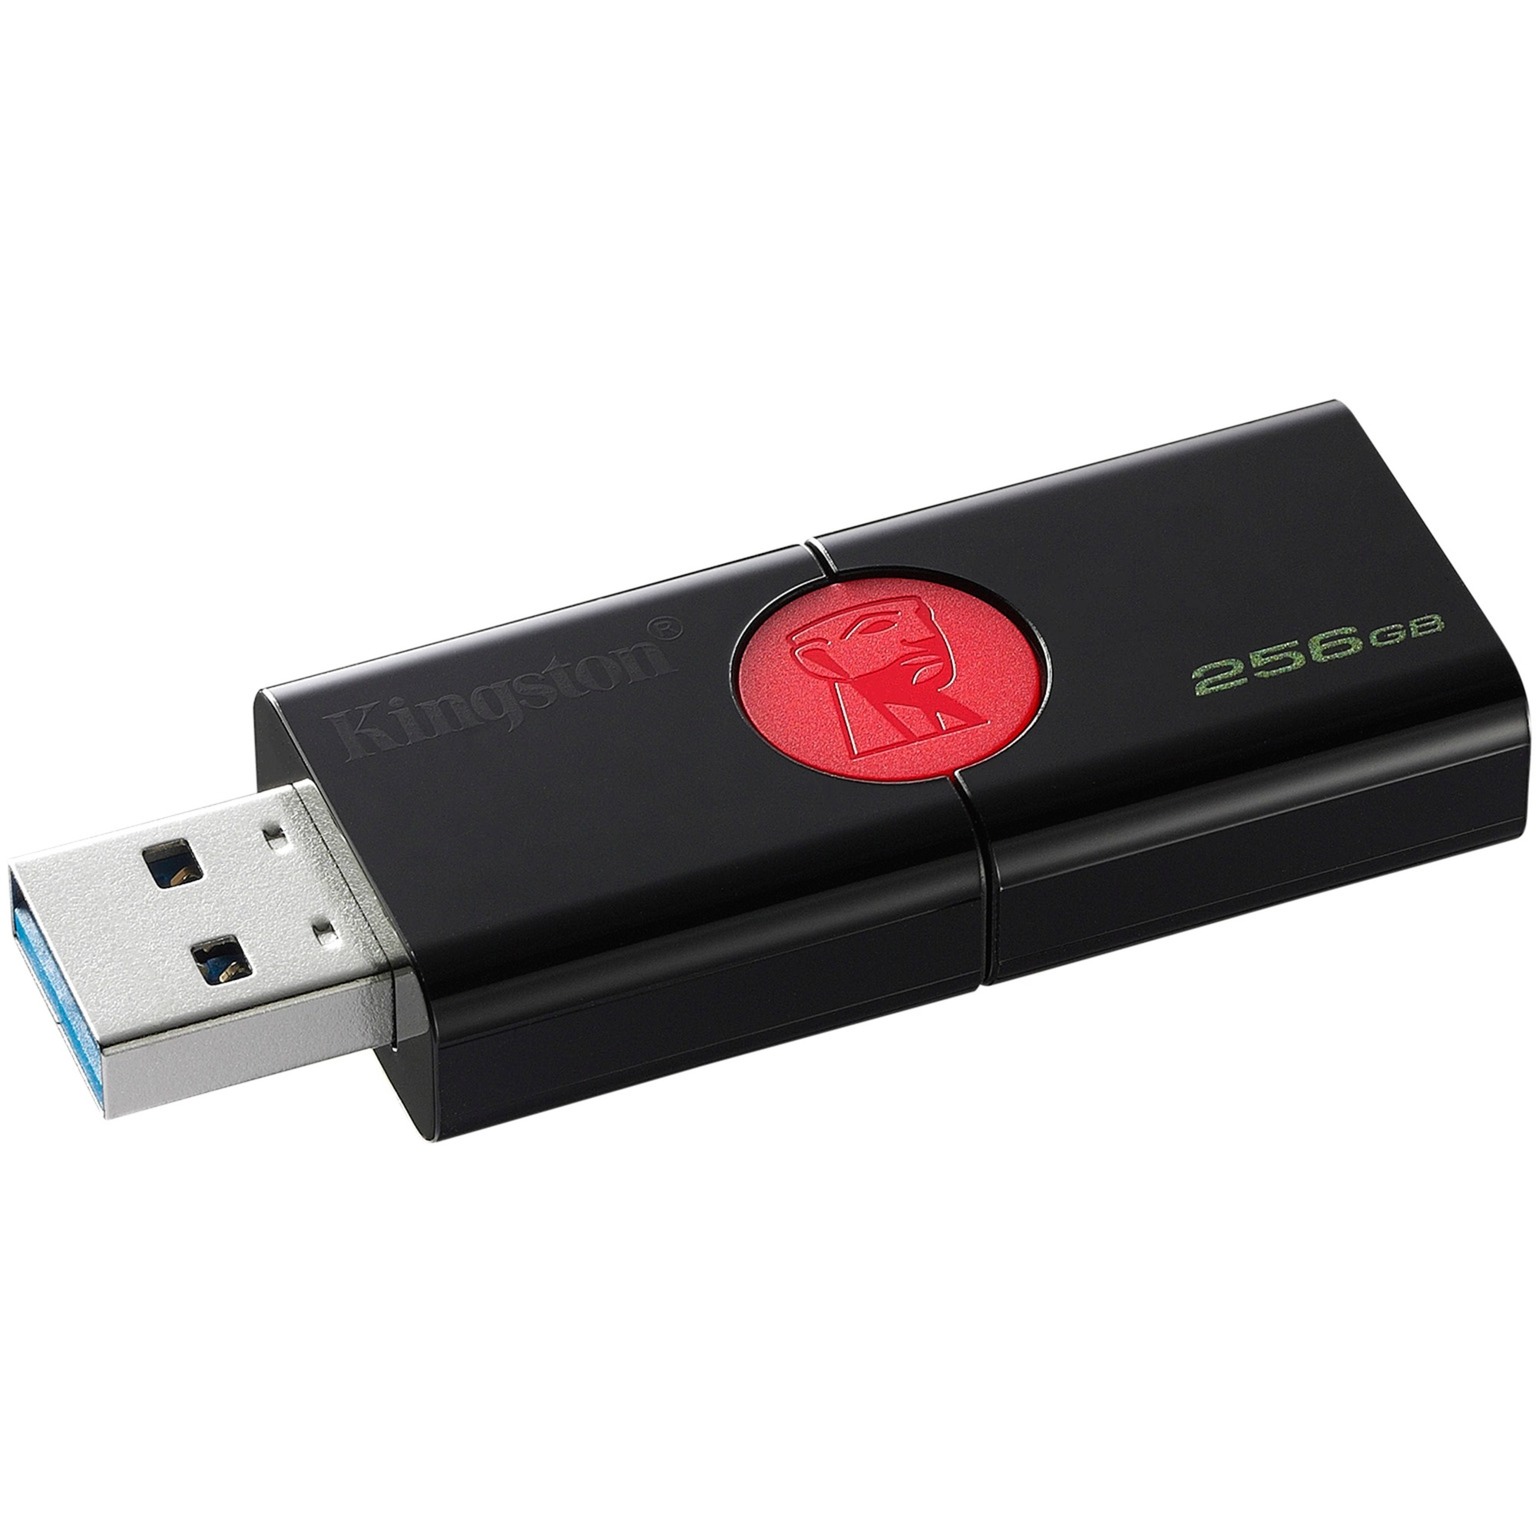 DataTraveler 106 pami?? USB 256 GB 3.0 (3.1 Gen 1) Z??cze USB typu A Czarny, Czerwony, No?nik Pendrive USB